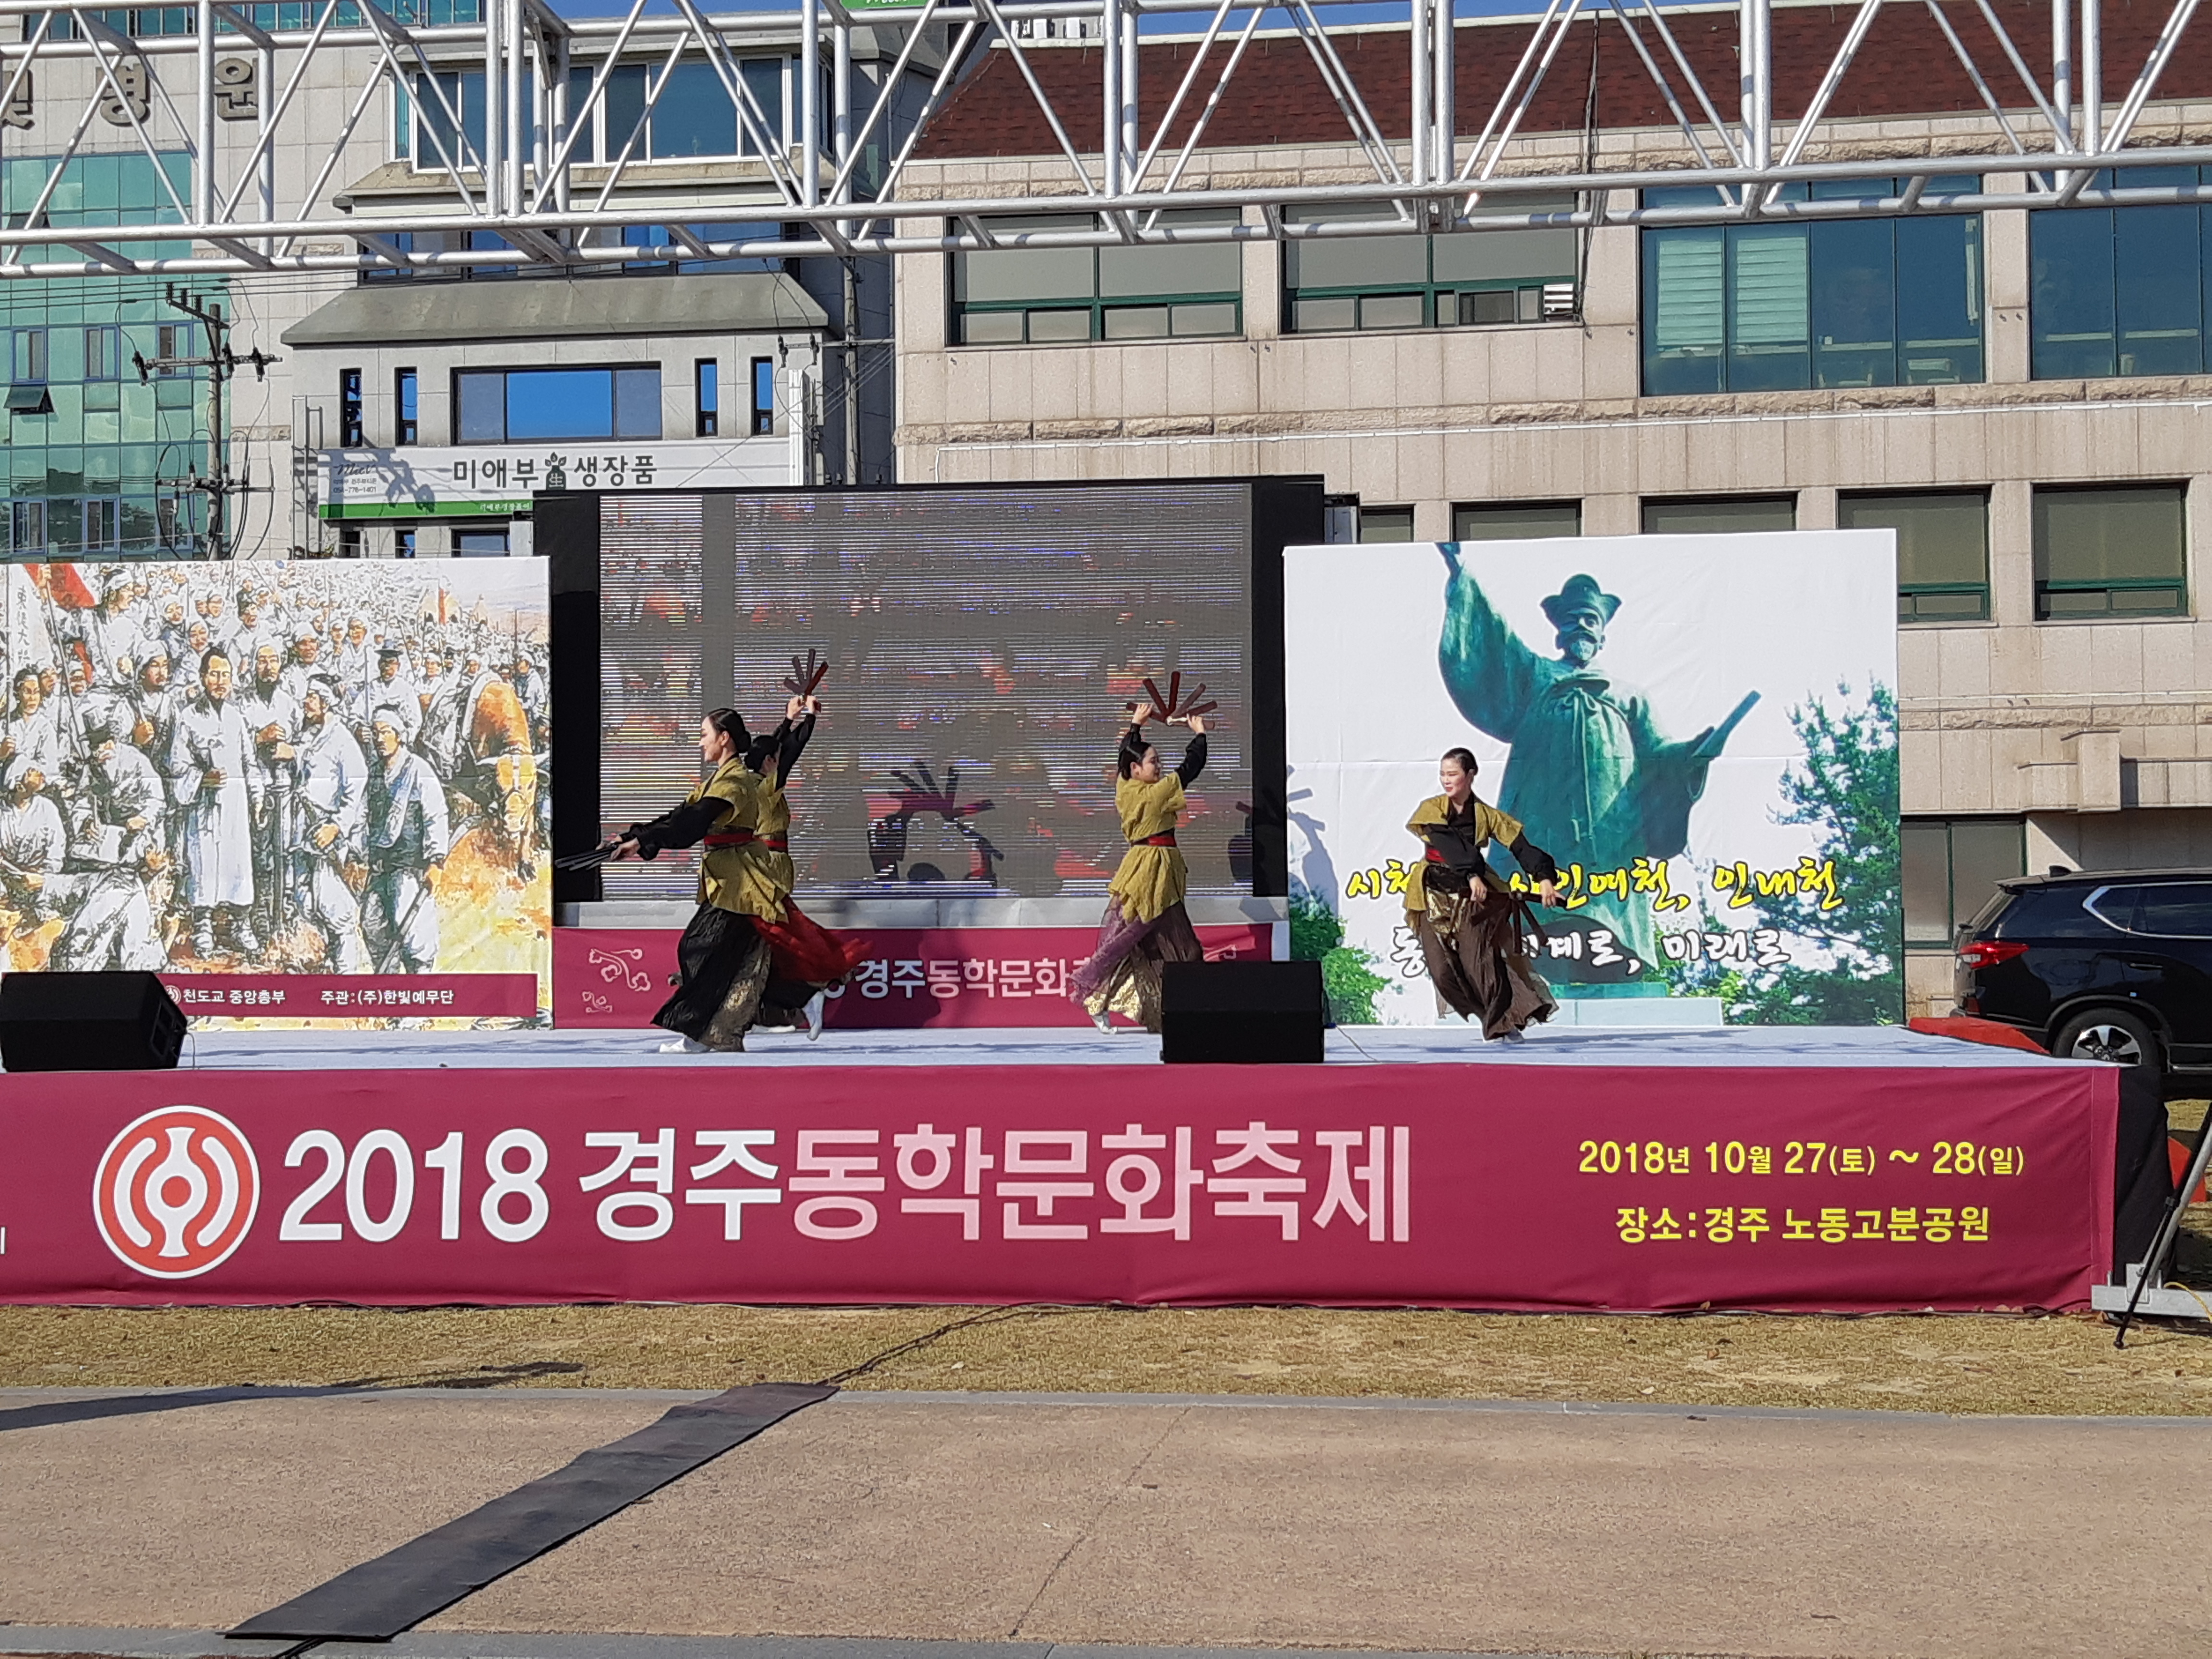 2018 경주동학문화축제 공연모습 이미지